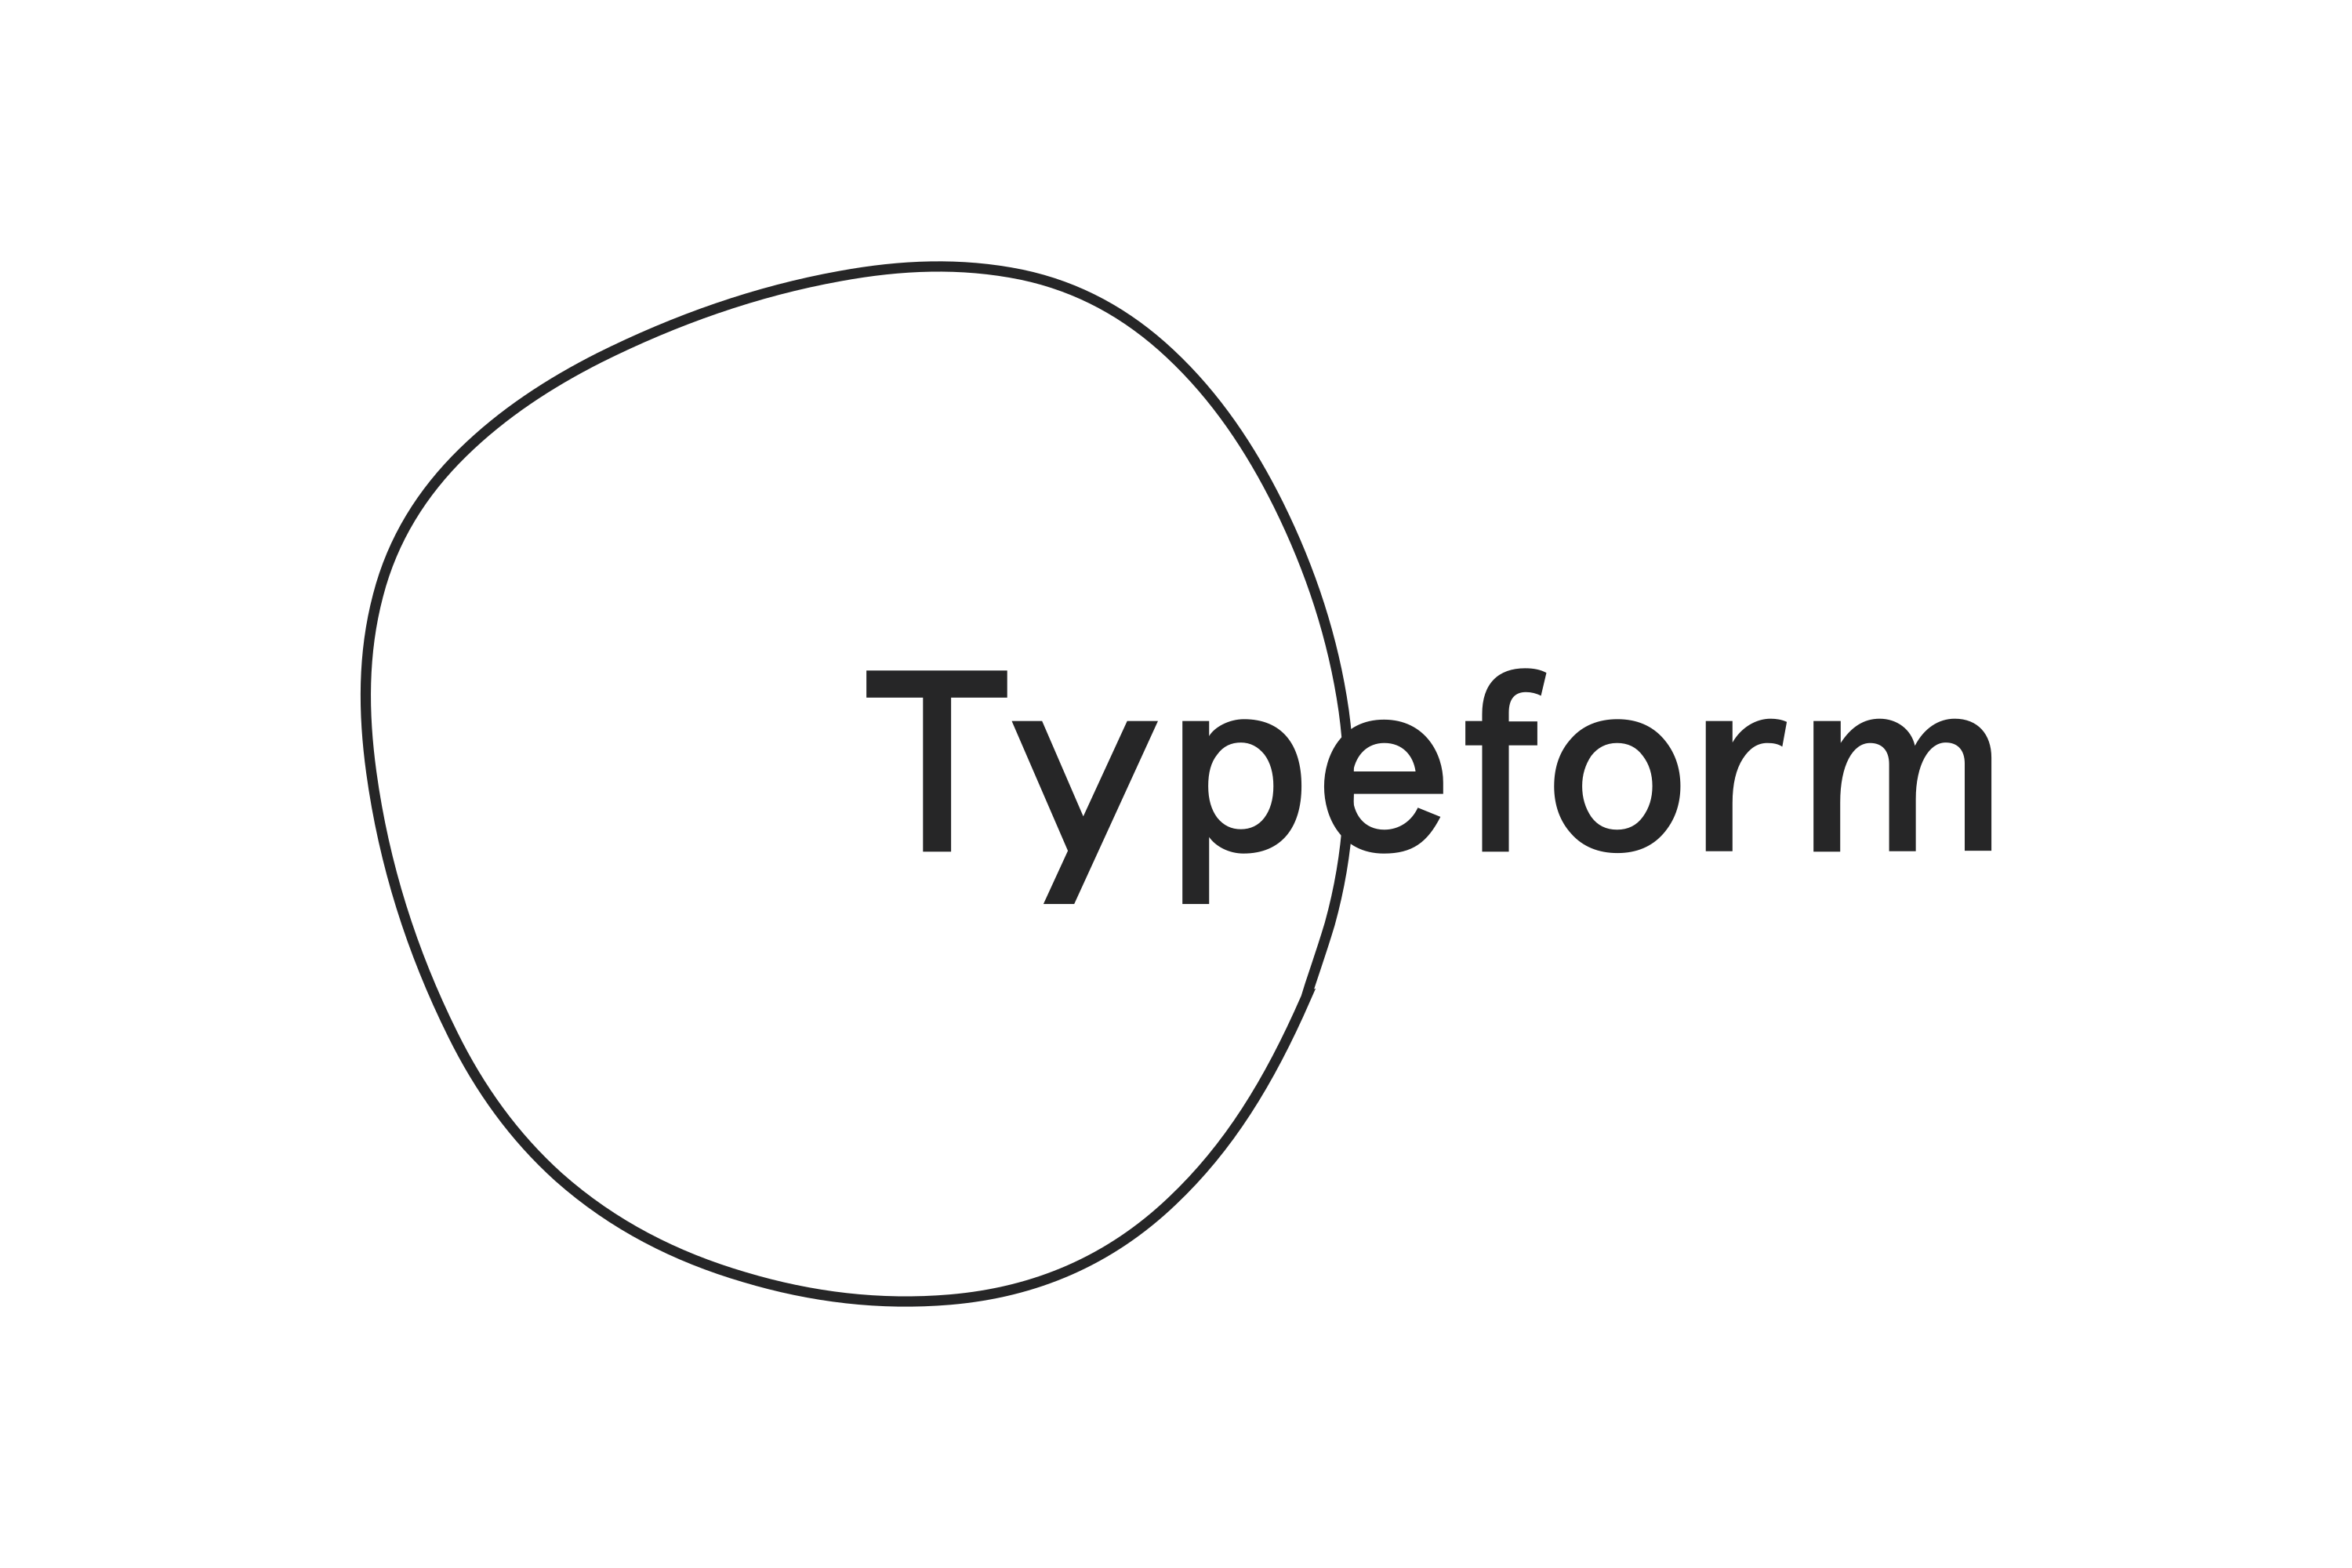 Helppier integração com Typeform